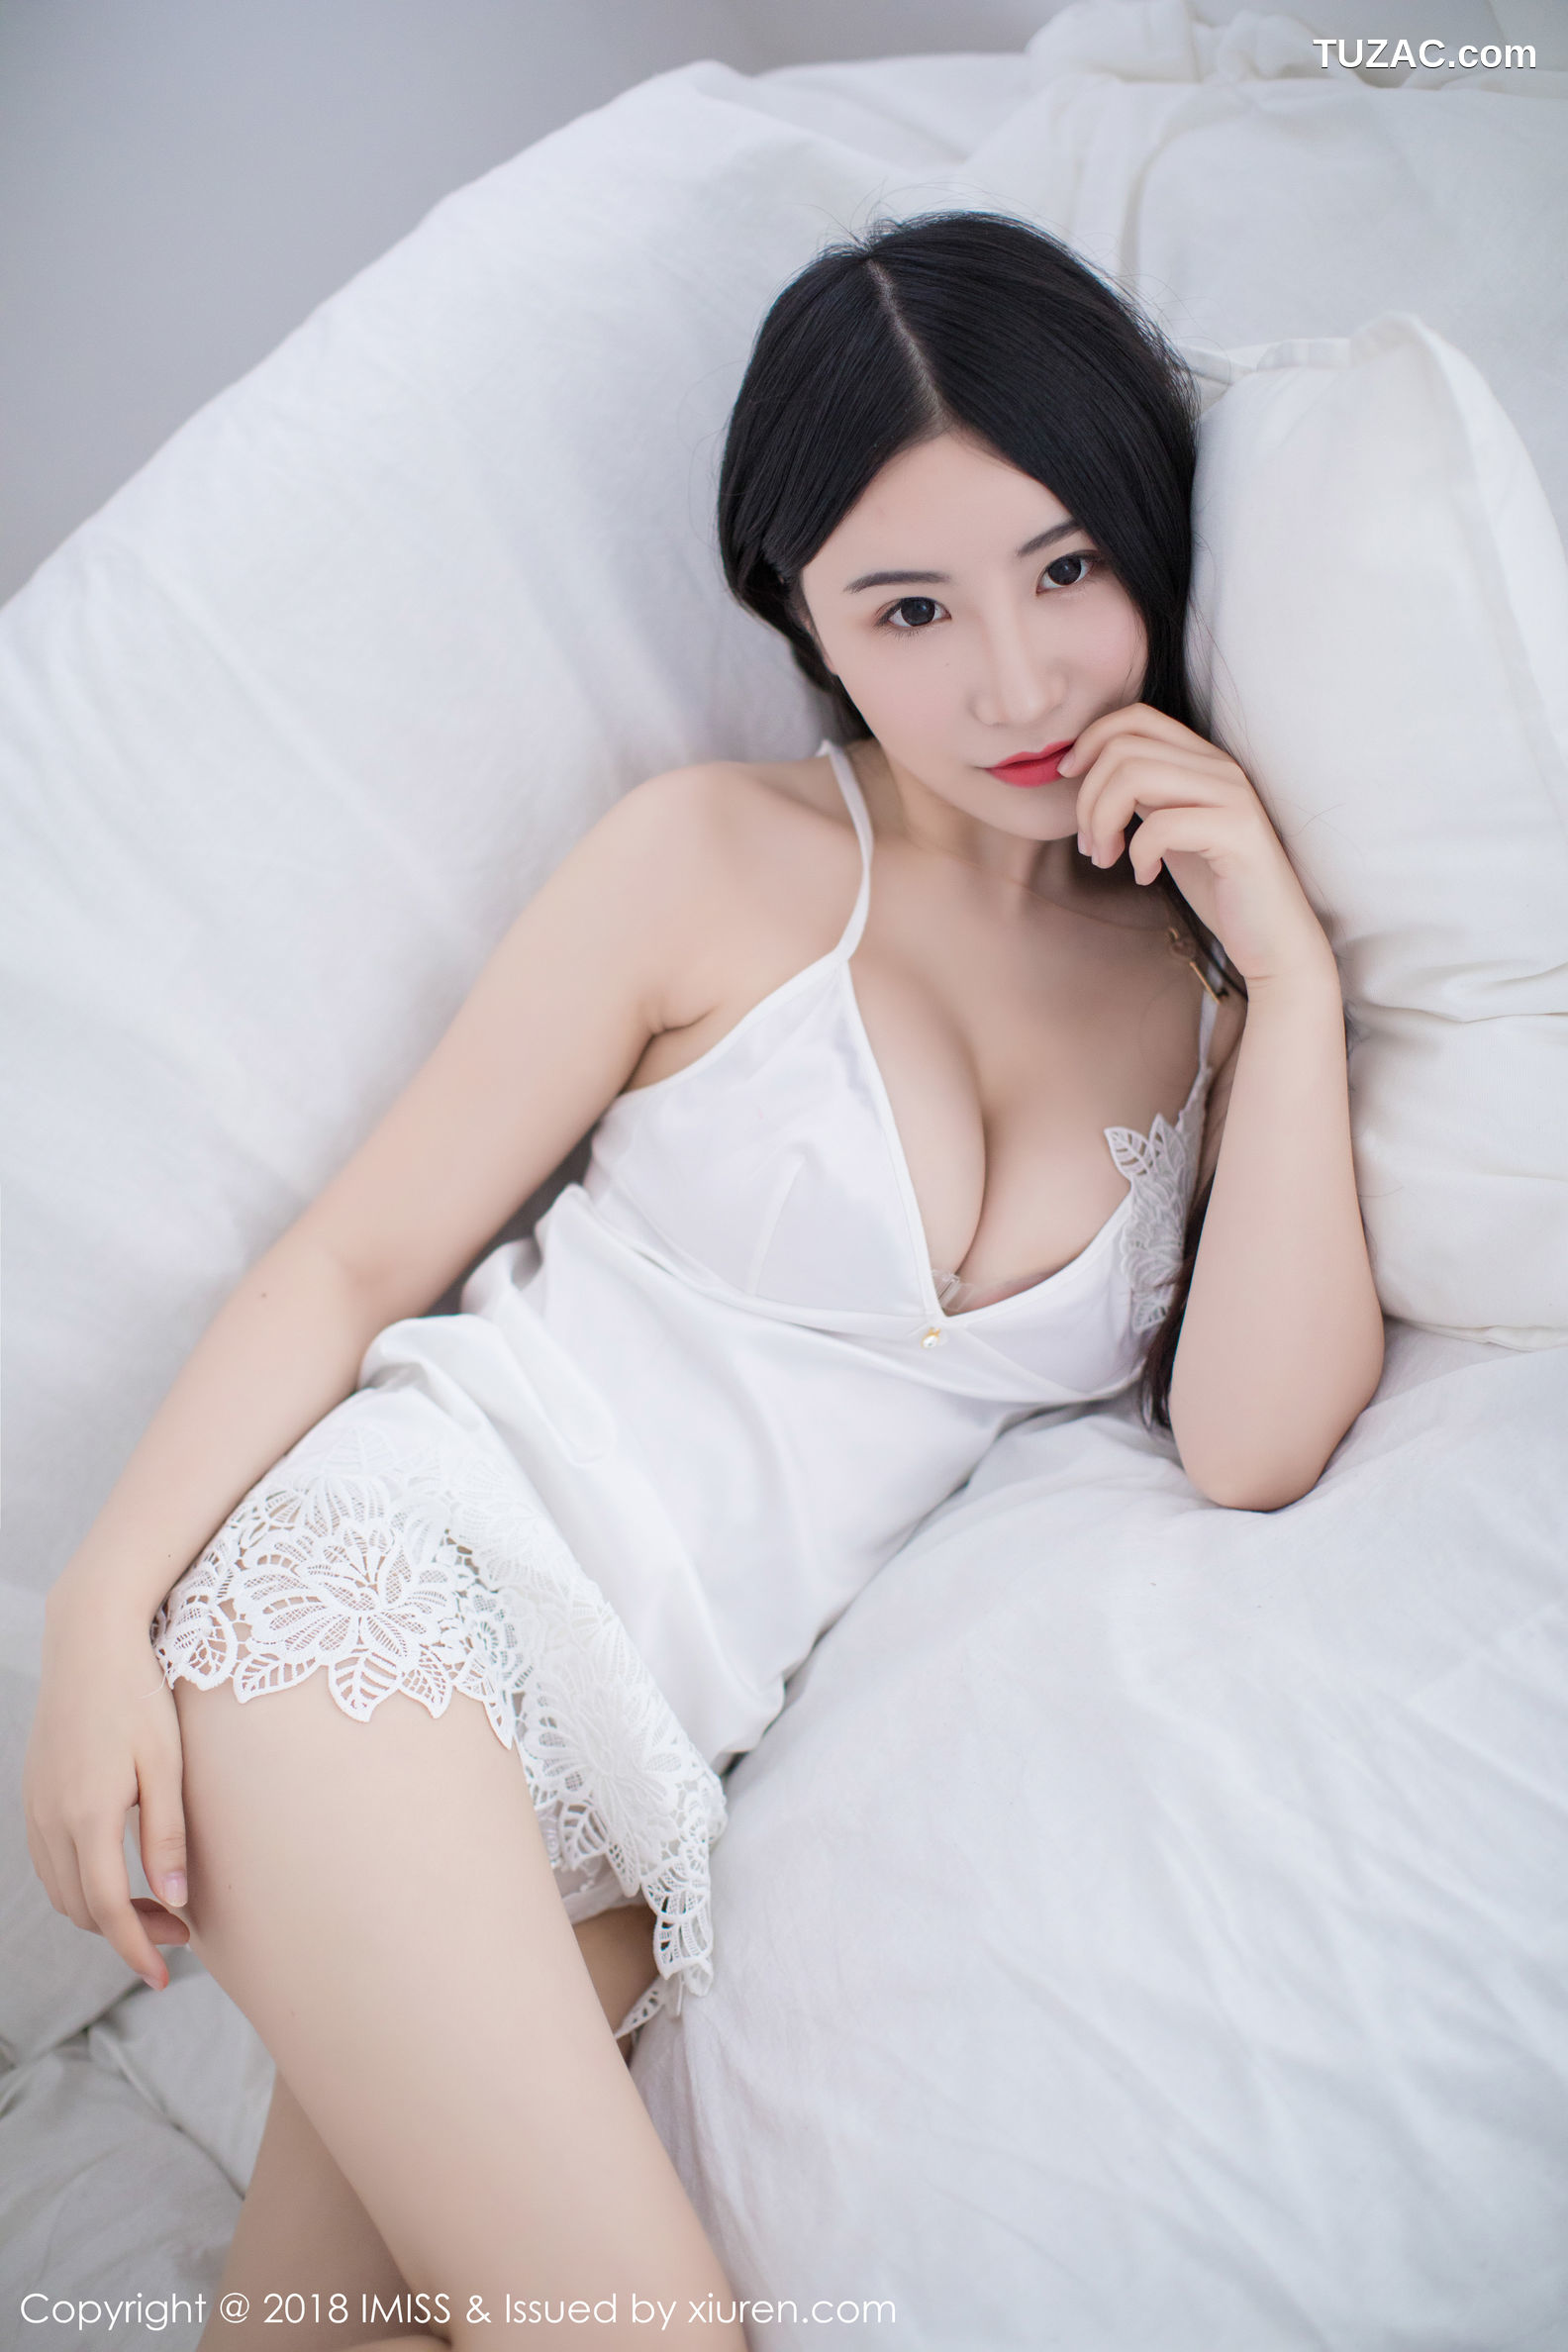 IMiss爱蜜社-214-谢芷馨-粉色吊带连身裙-白色低胸连身裙